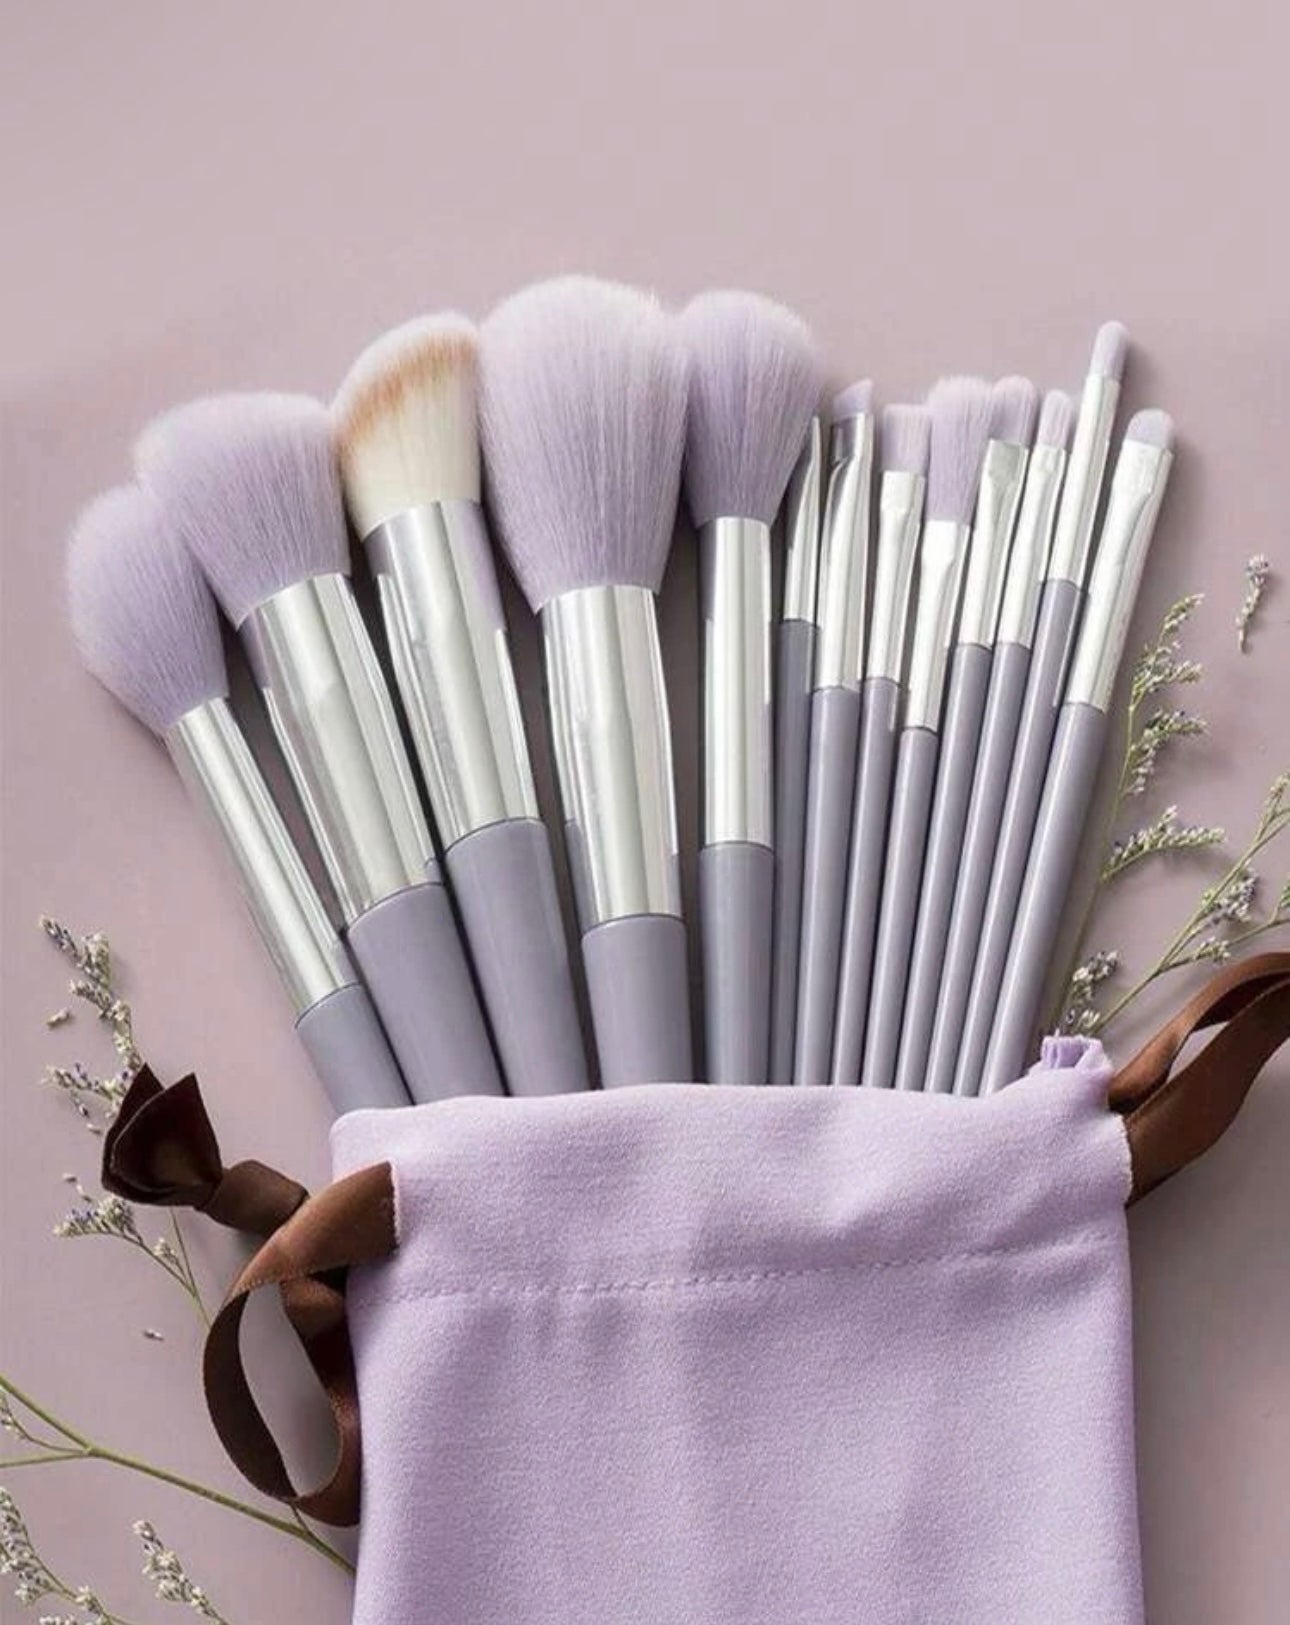 13pcs Portable makeup brush set, with drawstring storage bag